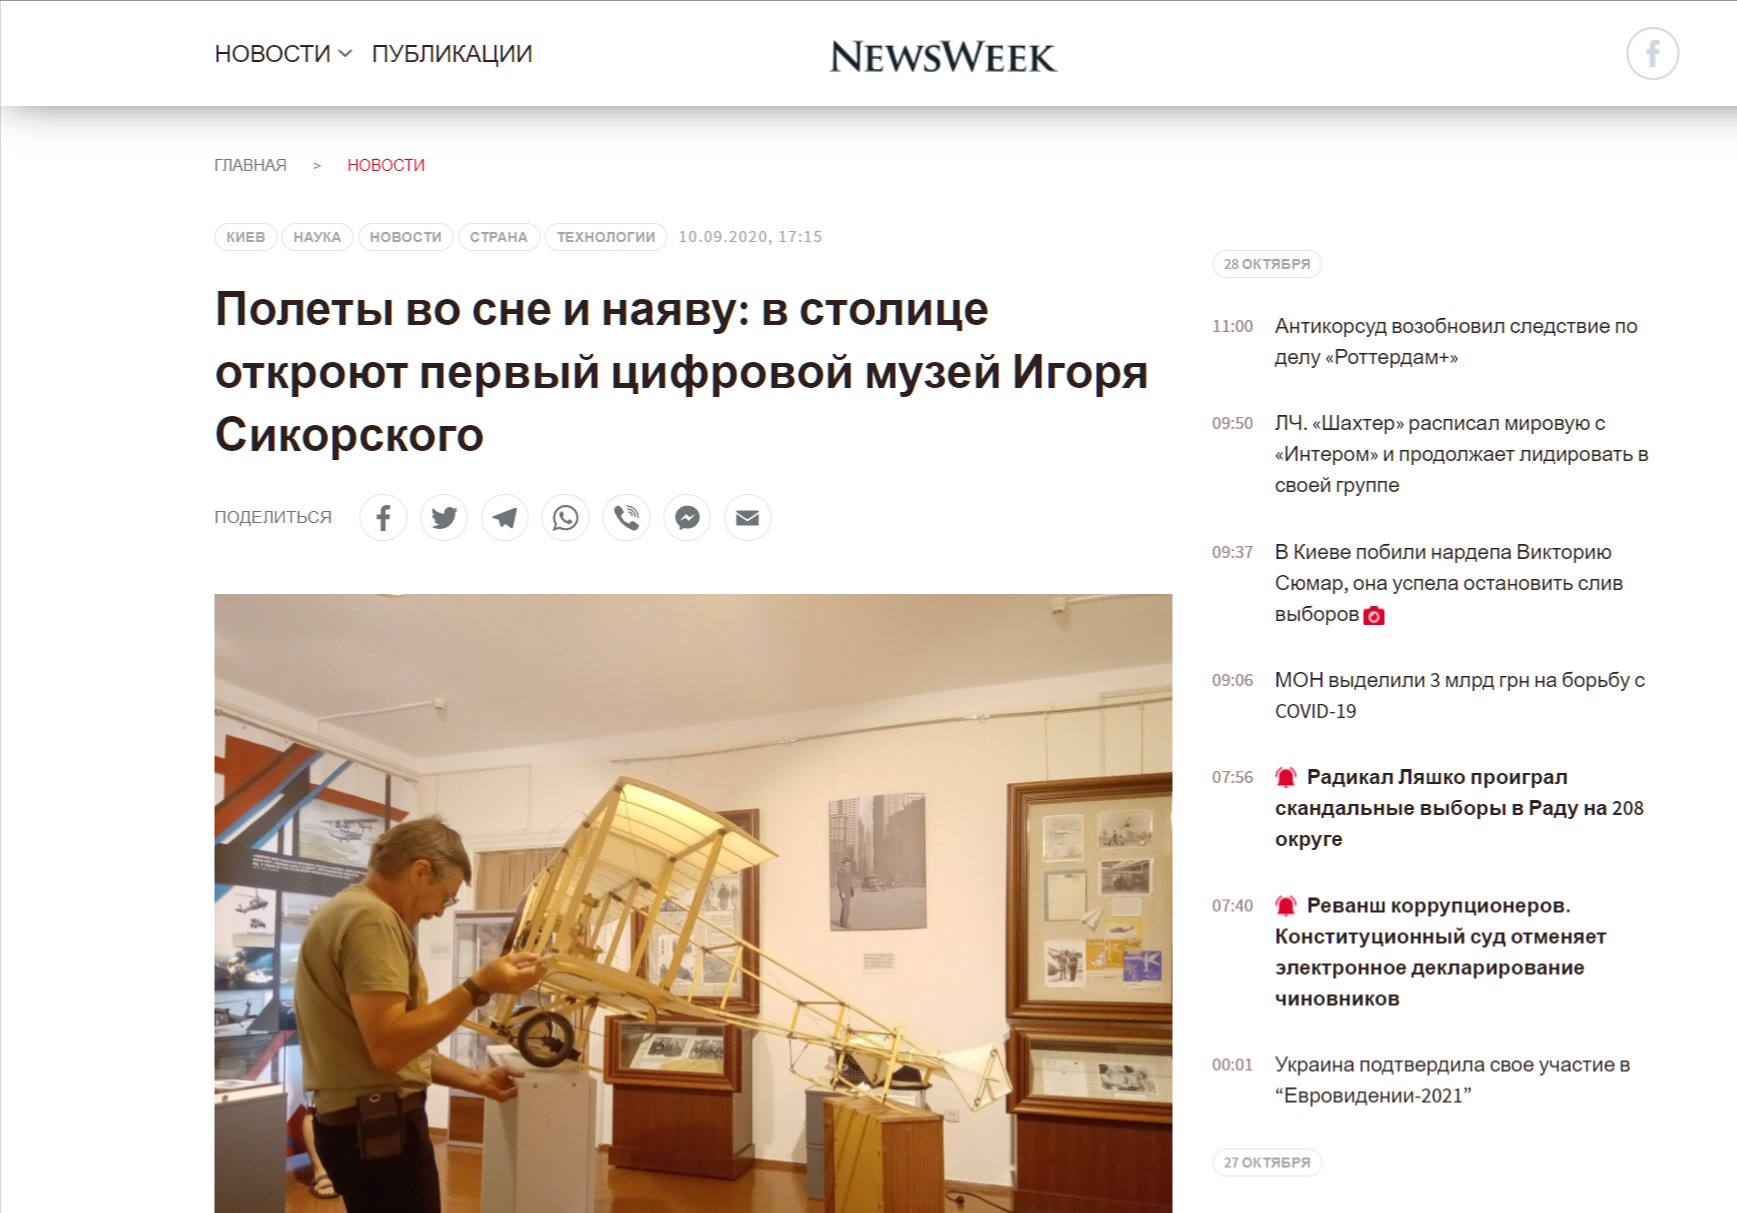 Полеты во сне и наяву: в столице откроют первый цифровой музей Игоря Сикорского